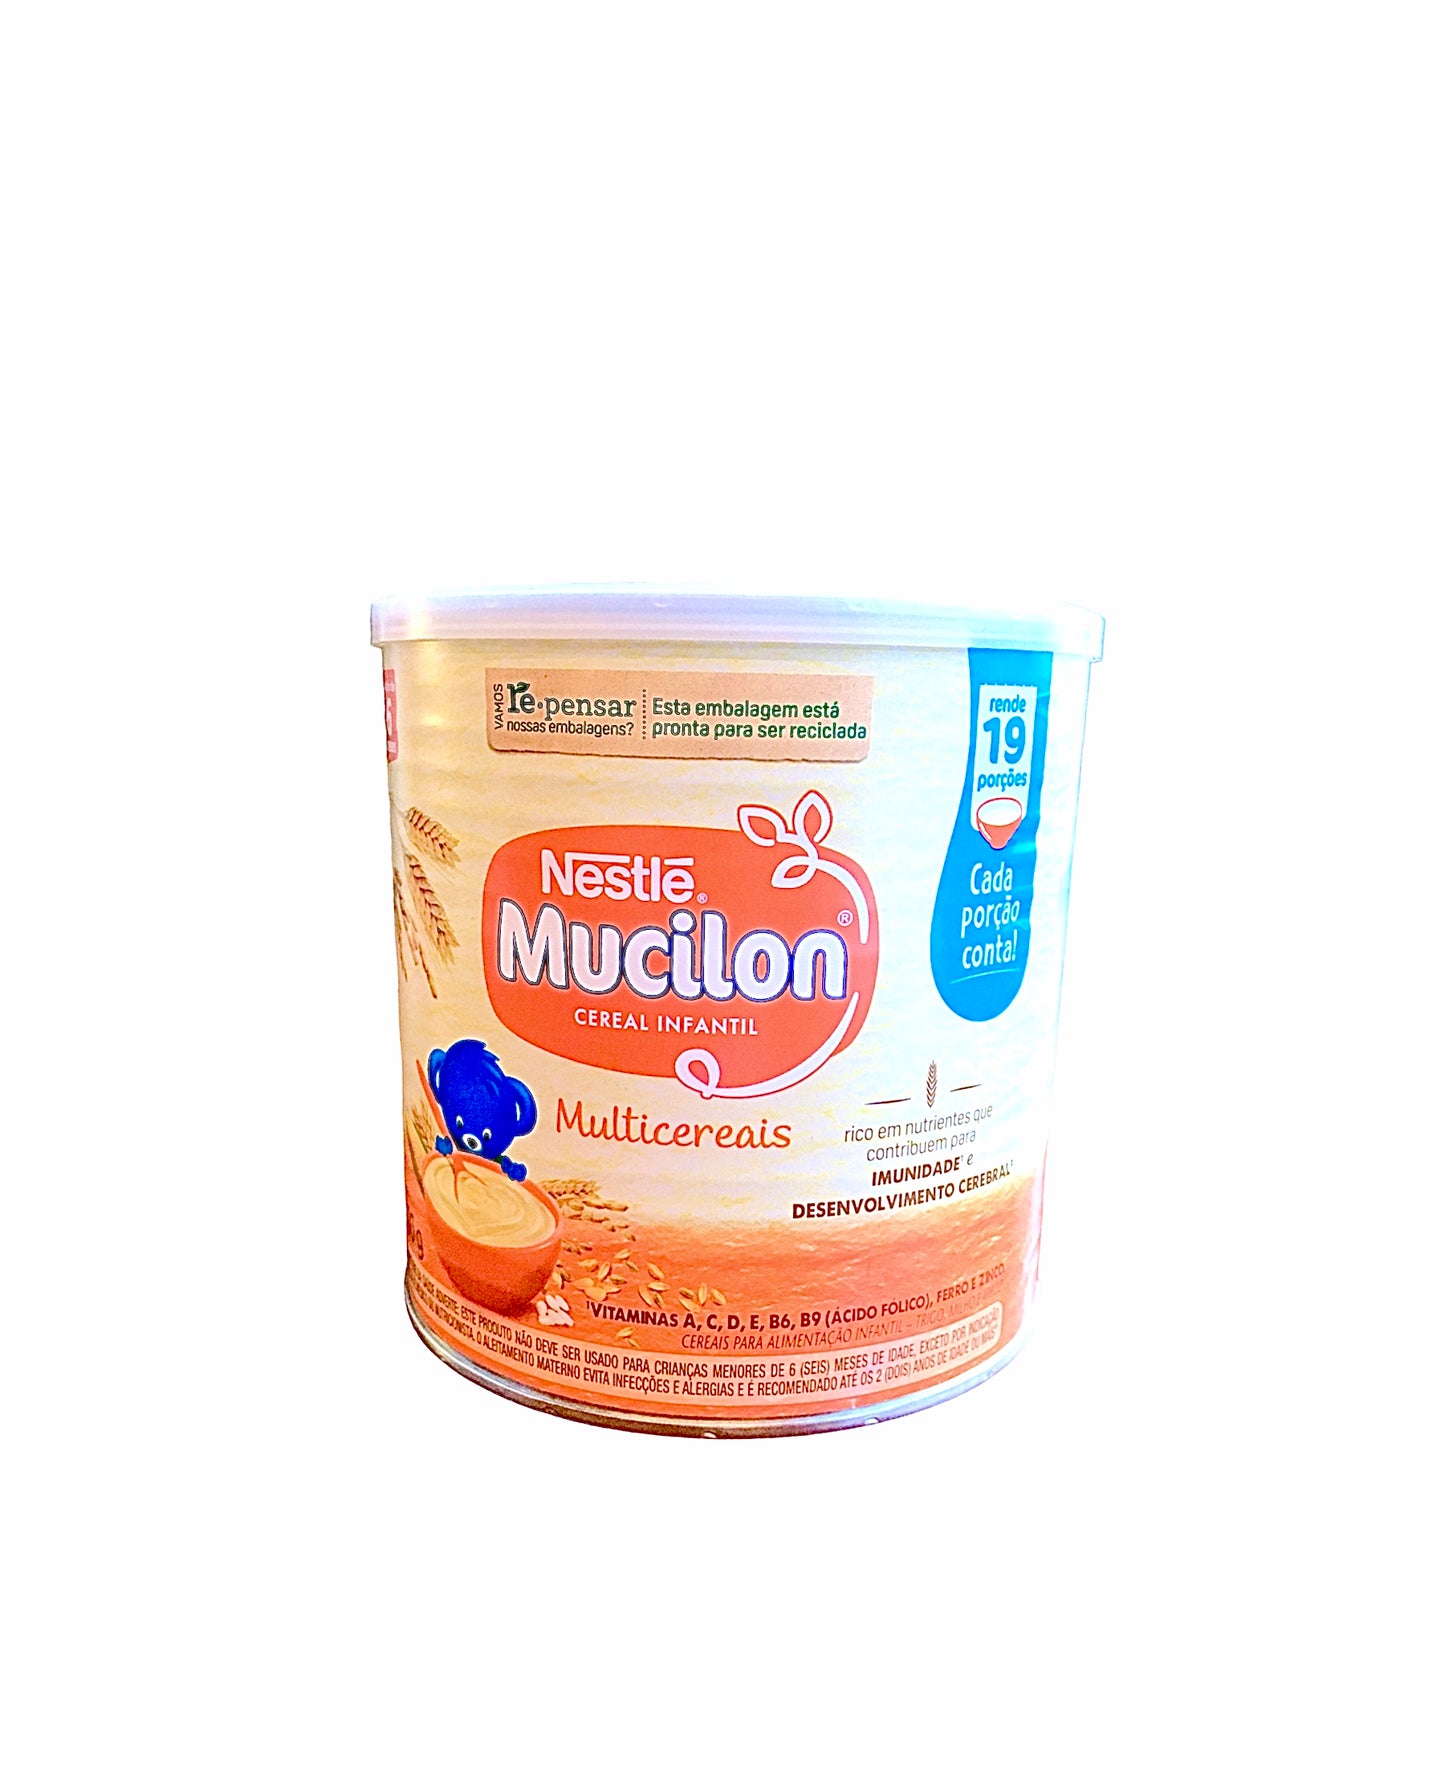 Nestlé Multi Cereal | Mucilon Multi Cereais